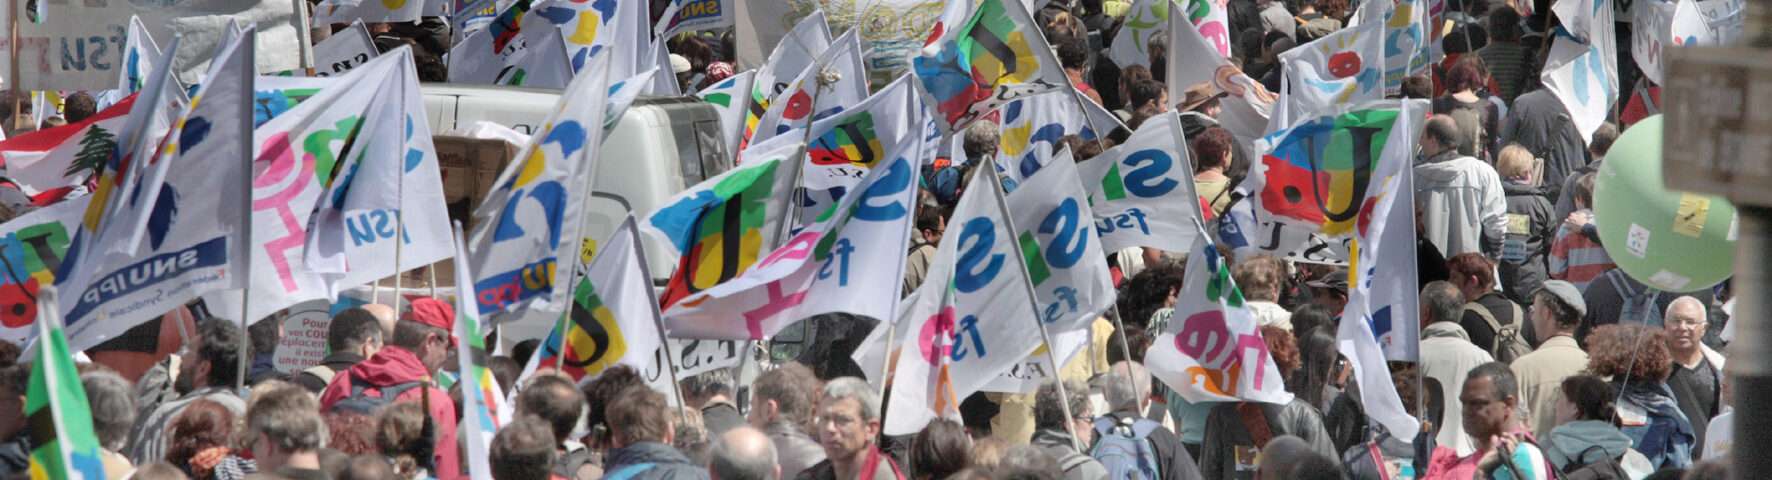 manifestation nationale le dimanche 18 mai 2008 à l'appel de la FSU et de la FCPE, de l'Opéra à la Bastille contre la réforme Darcos, les suppression de postes, pour la défense de l'école publique.40 000 manifestants. PARIS/2008/05/18/JMB